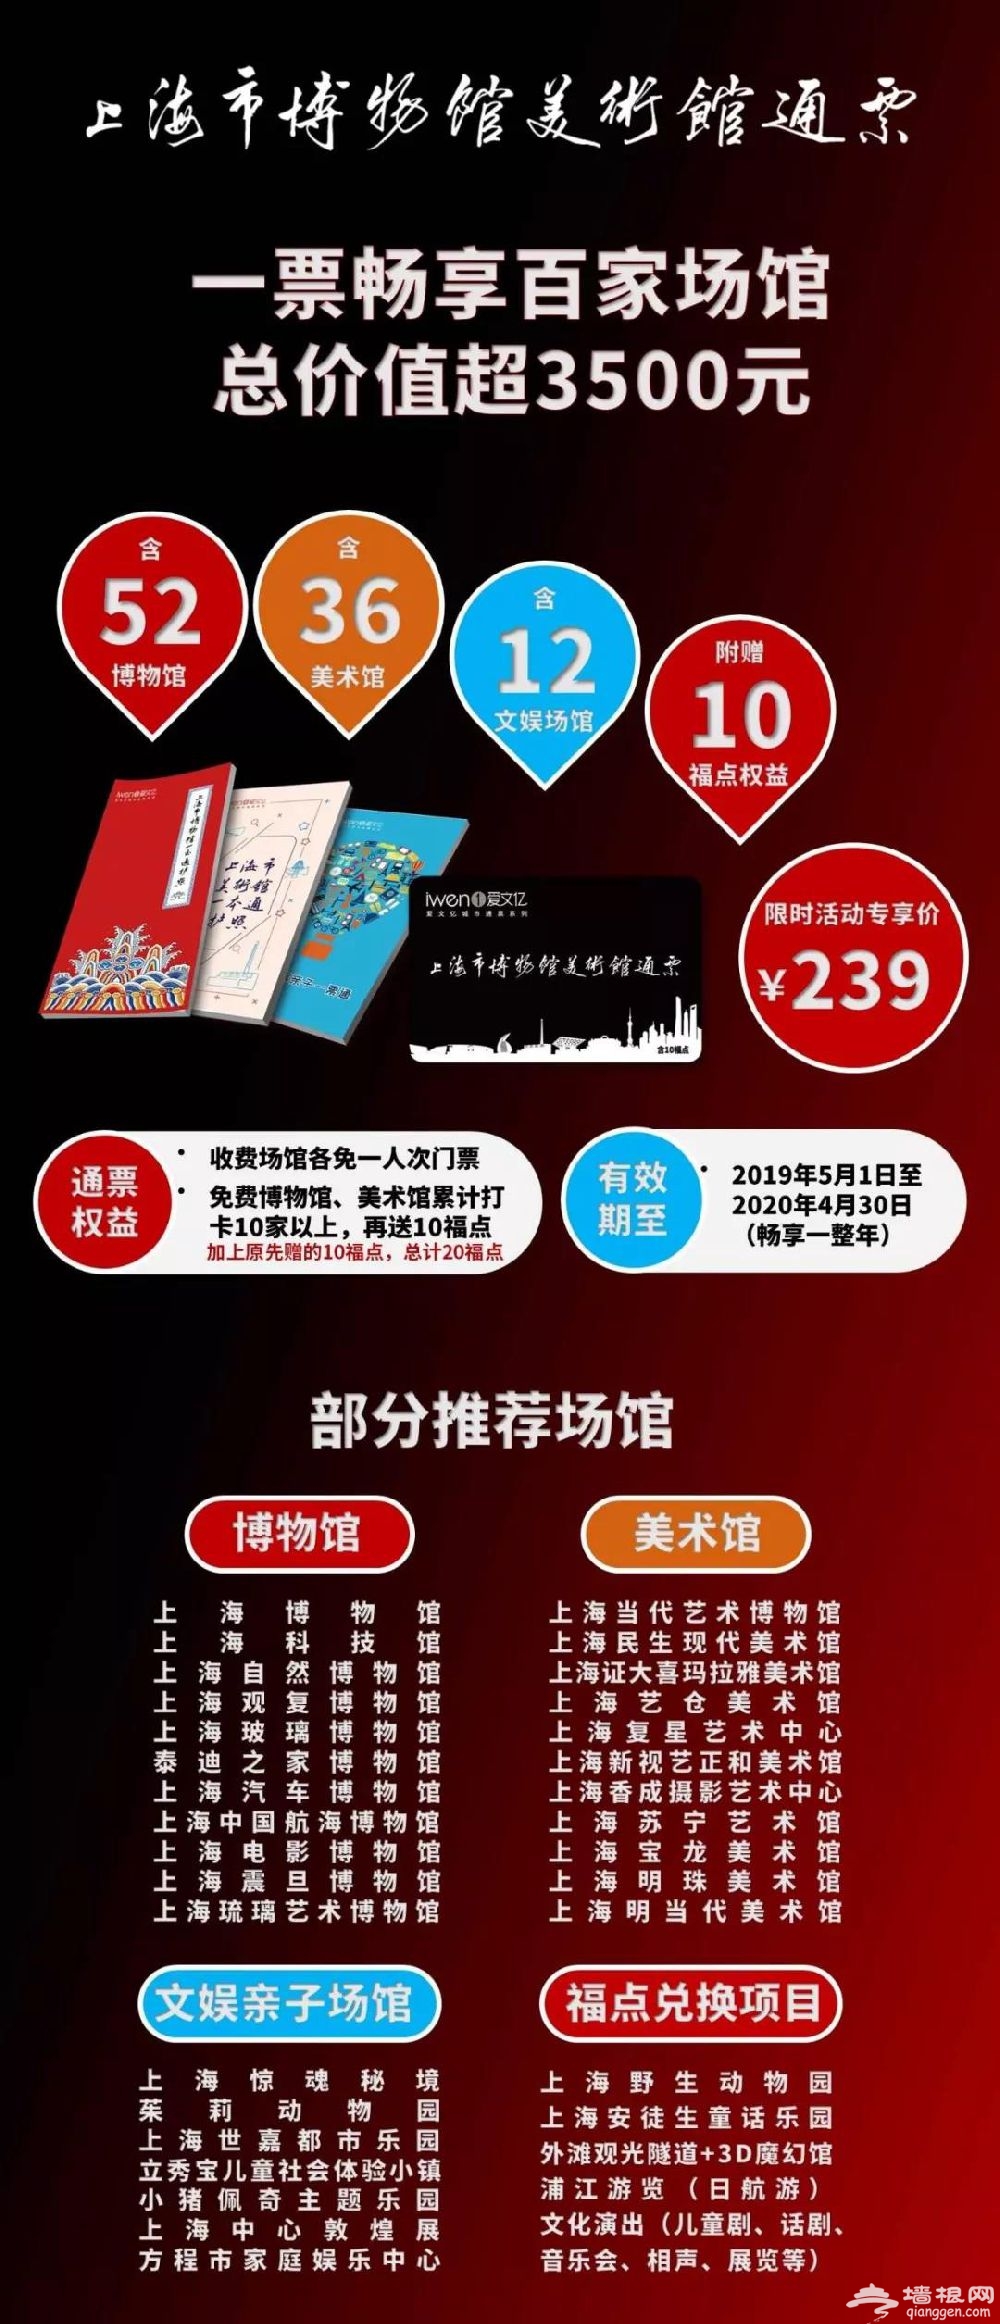 2019《上海市博物馆美术馆通票》全新发布 限时专享价239元